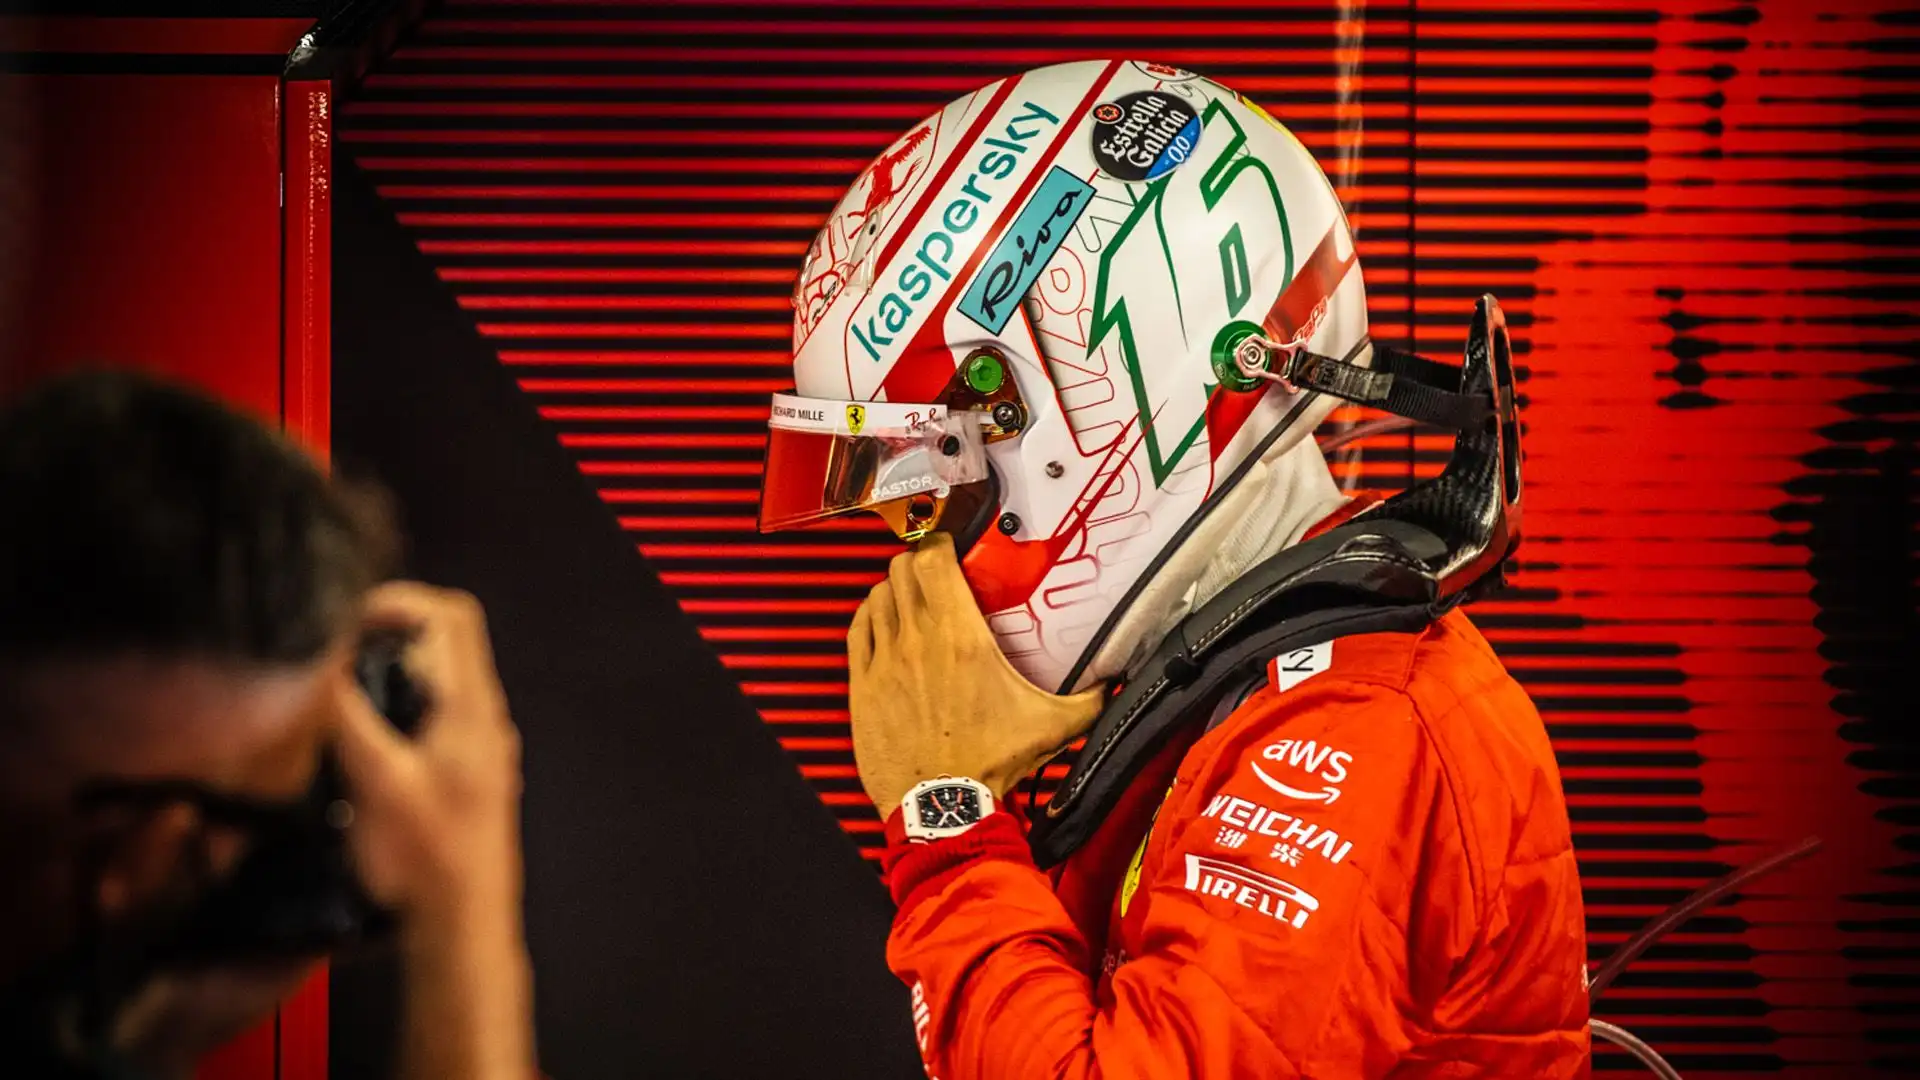 La Scuderia Ferrari può essere soddisfatta anche del terzo posto di Carlos Sainz, sebbene non sia ancora al massimo della forma fisica dopo l'operazione per l'appendicite.